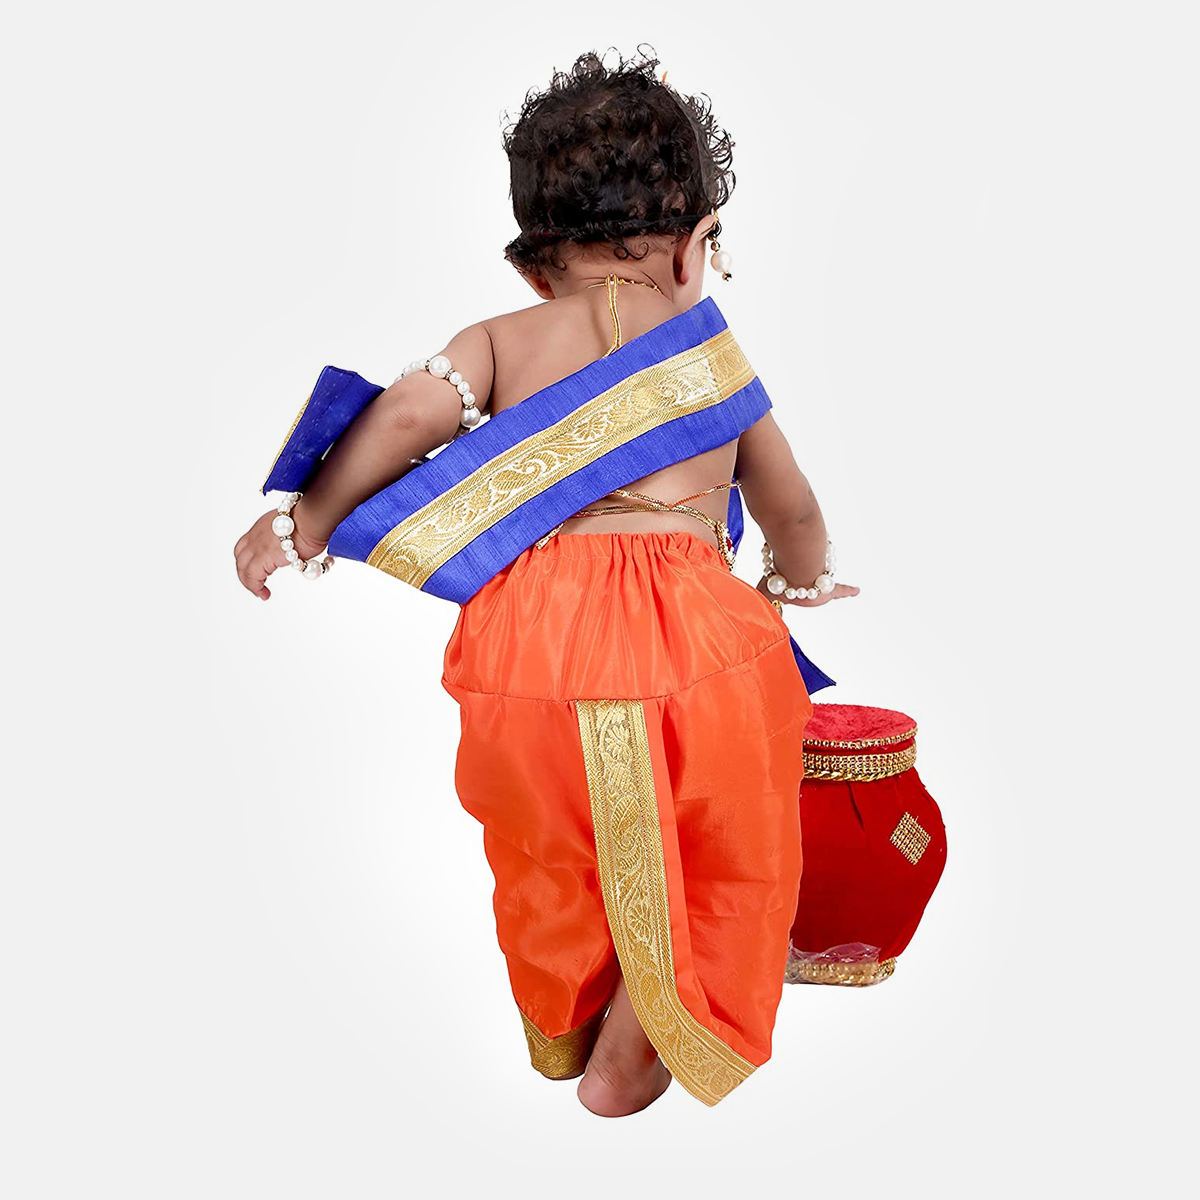 Baby Krishna Brocade Fabric Janmashtami Mythological Character Costume - Orange and Blue